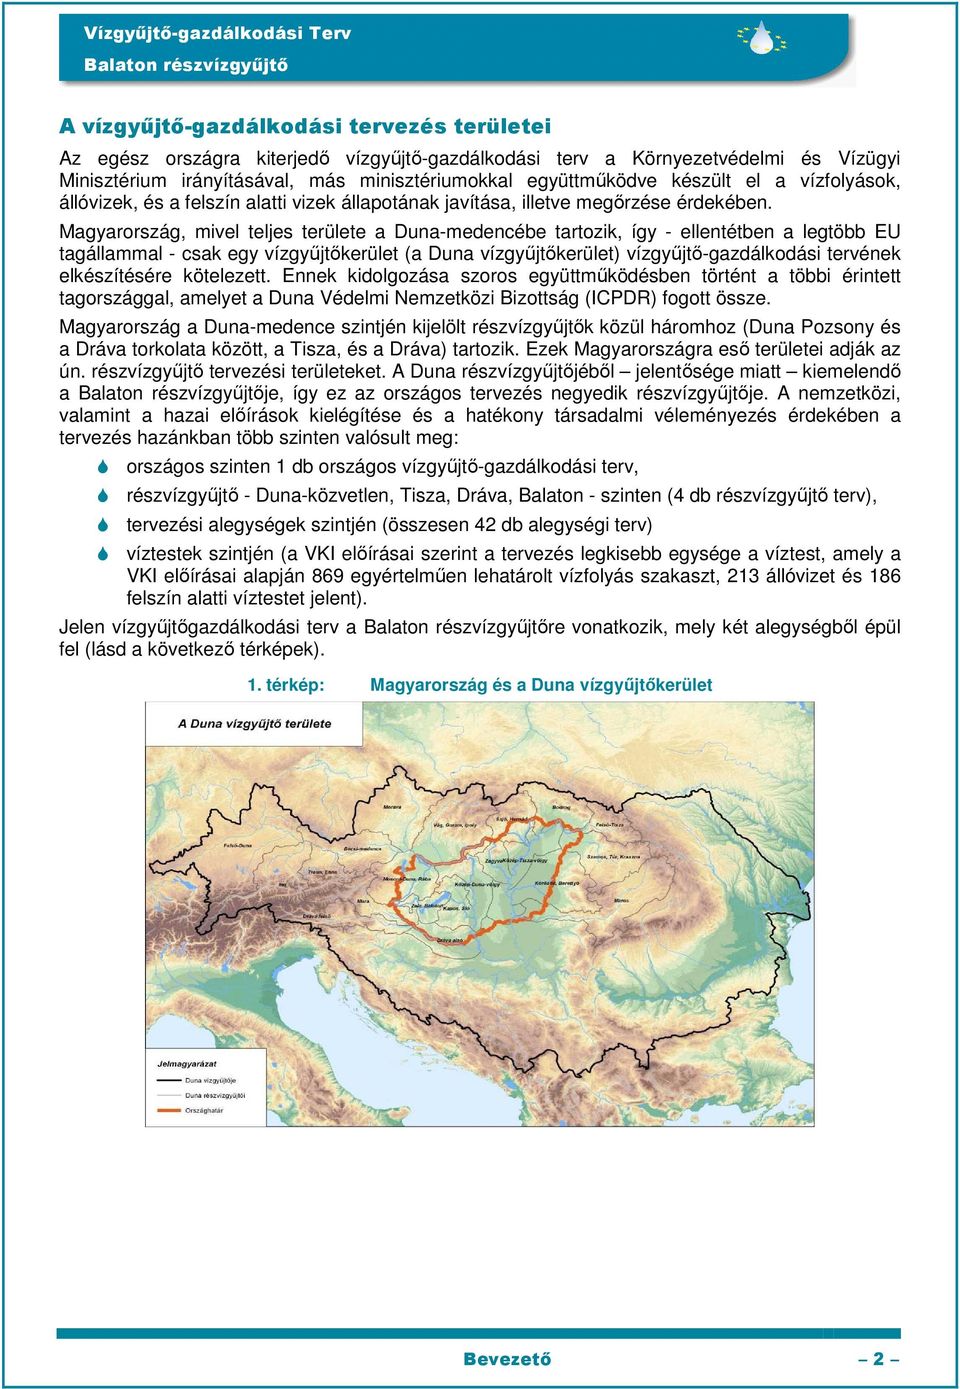 Magyarország, mivel teljes területe a Duna-medencébe tartozik, így - ellentétben a legtöbb EU tagállammal - csak egy vízgyűjtőkerület (a Duna vízgyűjtőkerület) vízgyűjtő-gazdálkodási tervének